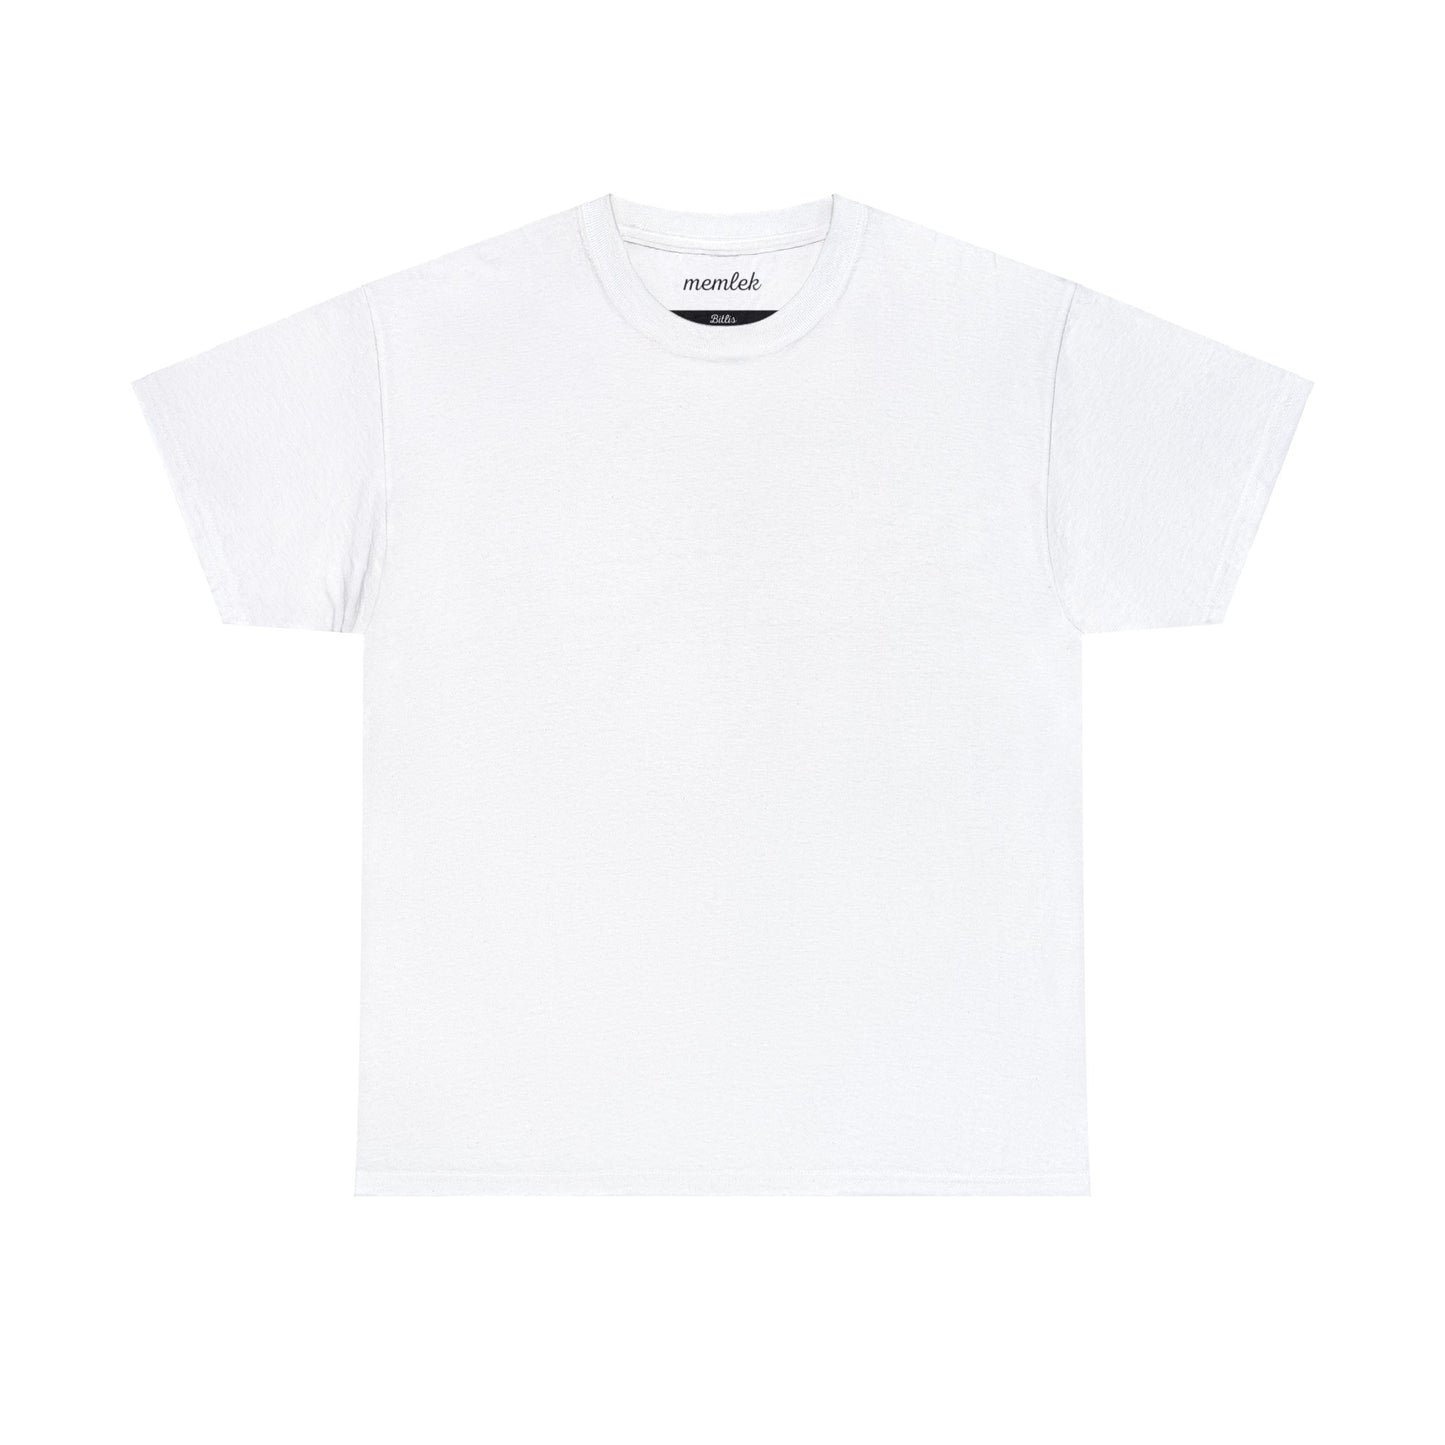 Kurt - 13 Bitlis - T-Shirt - Back Print - Black/White